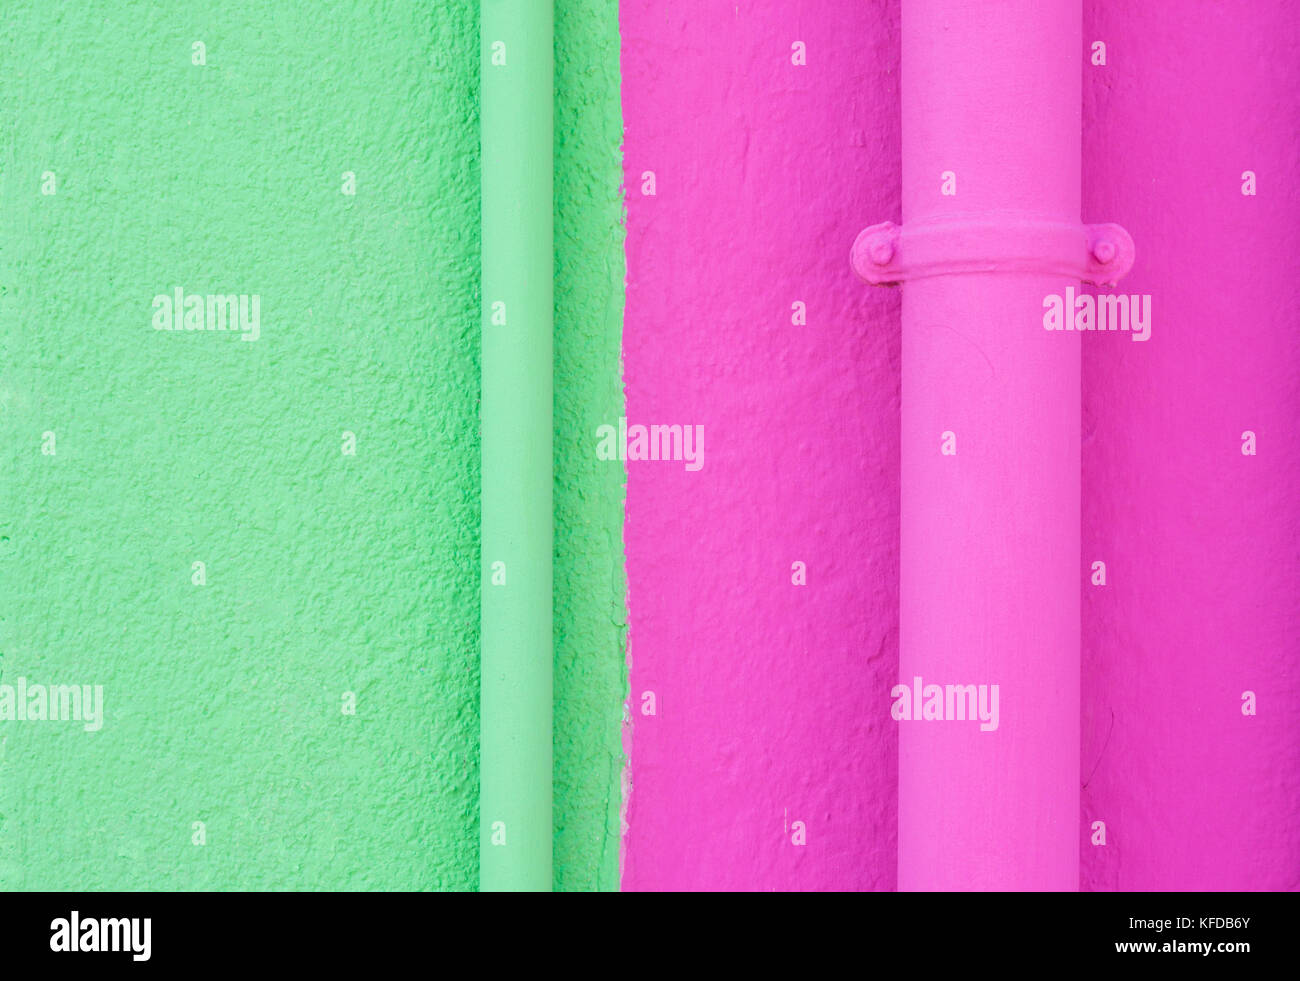 Hell gestrichene Wände grün und rosa gestrichenen Wänden und Abflussrohre Stockfoto